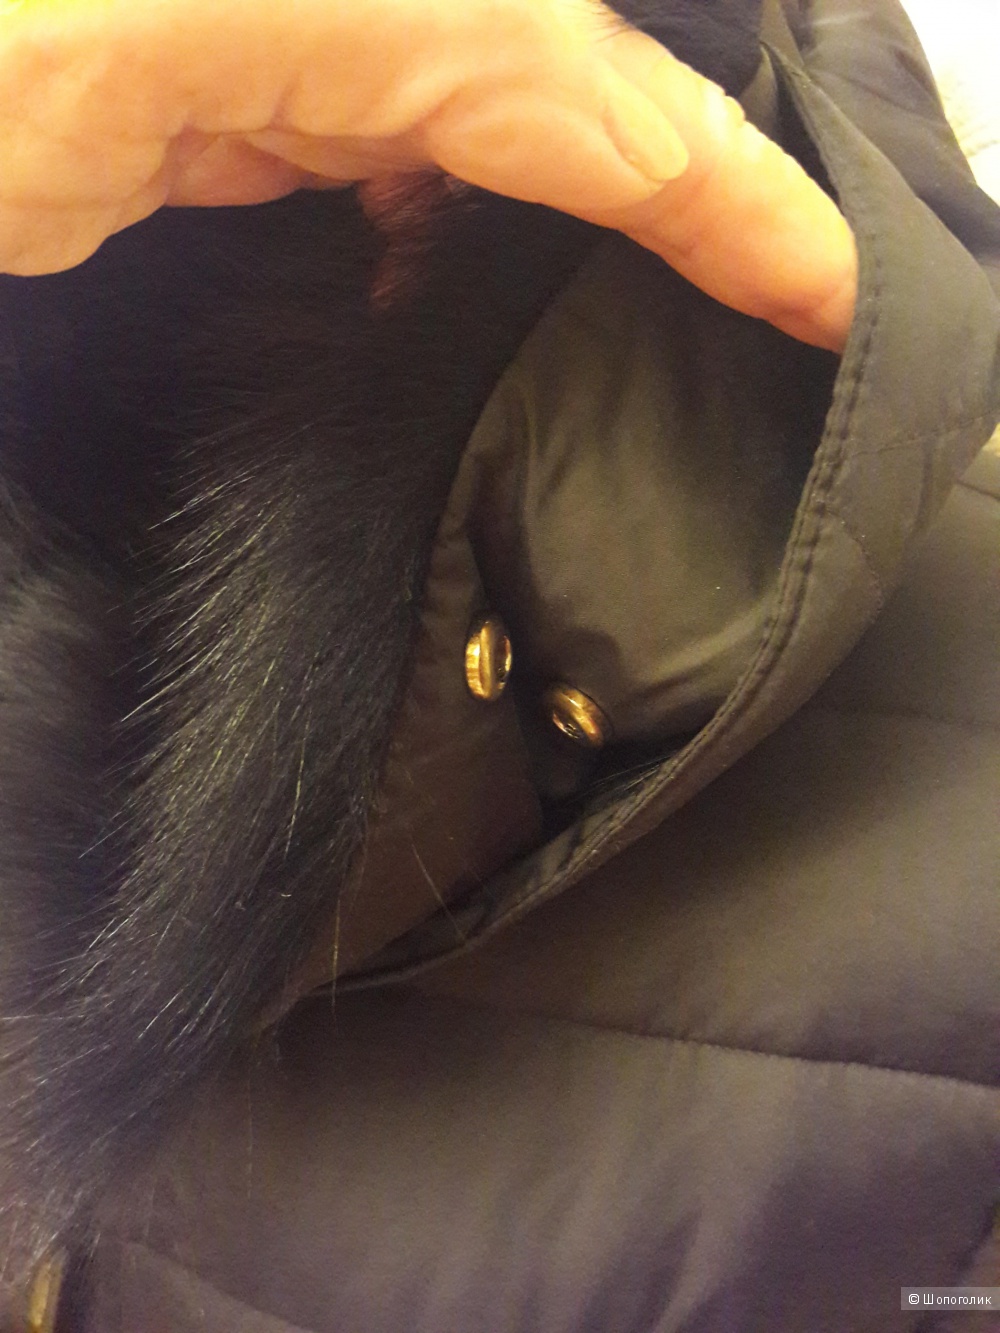 Massimo Dutti: удлиненная женская куртка-пуховик, Xl